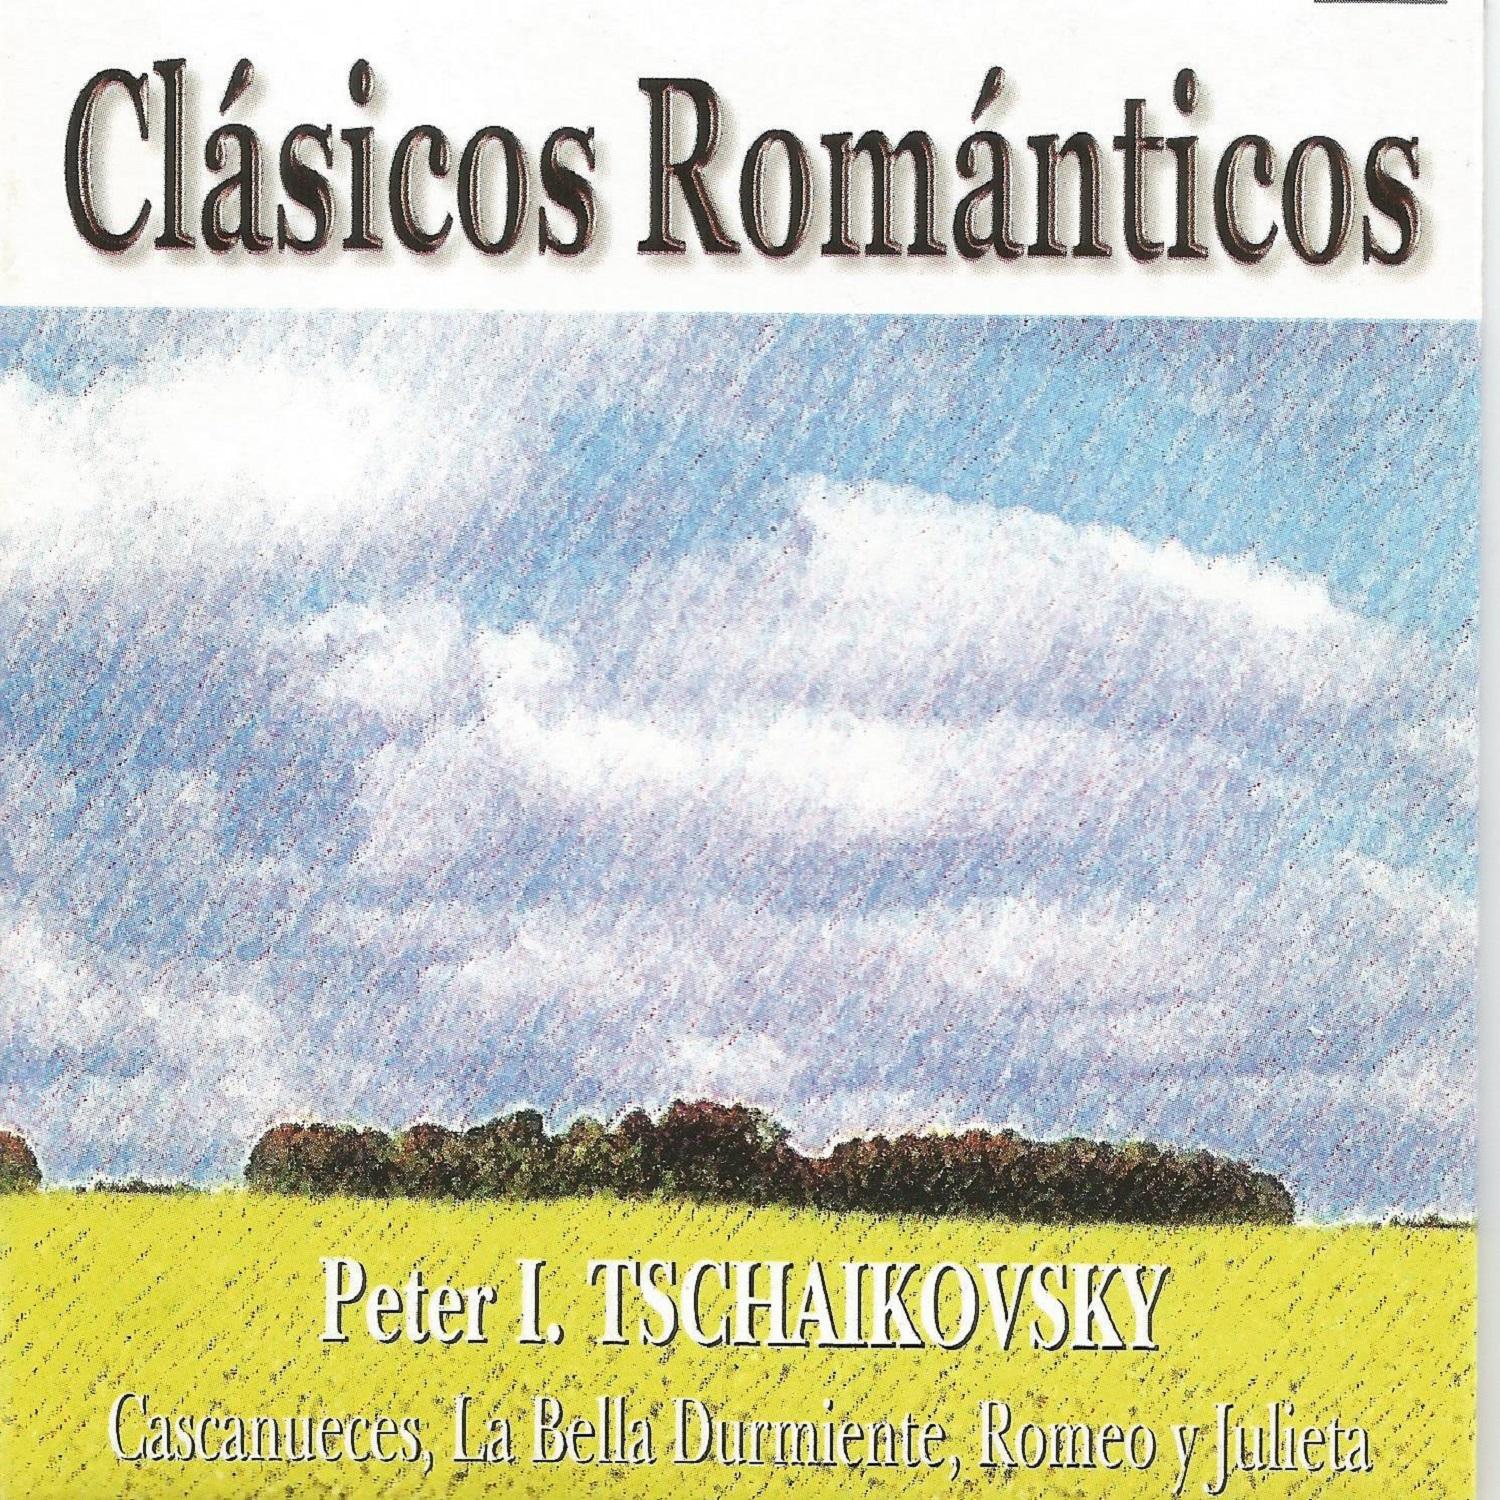 Cla sicos Roma nticos  Tchaikovsky  Cascanueces  La Bella Durmiente  Romeo y Julieta